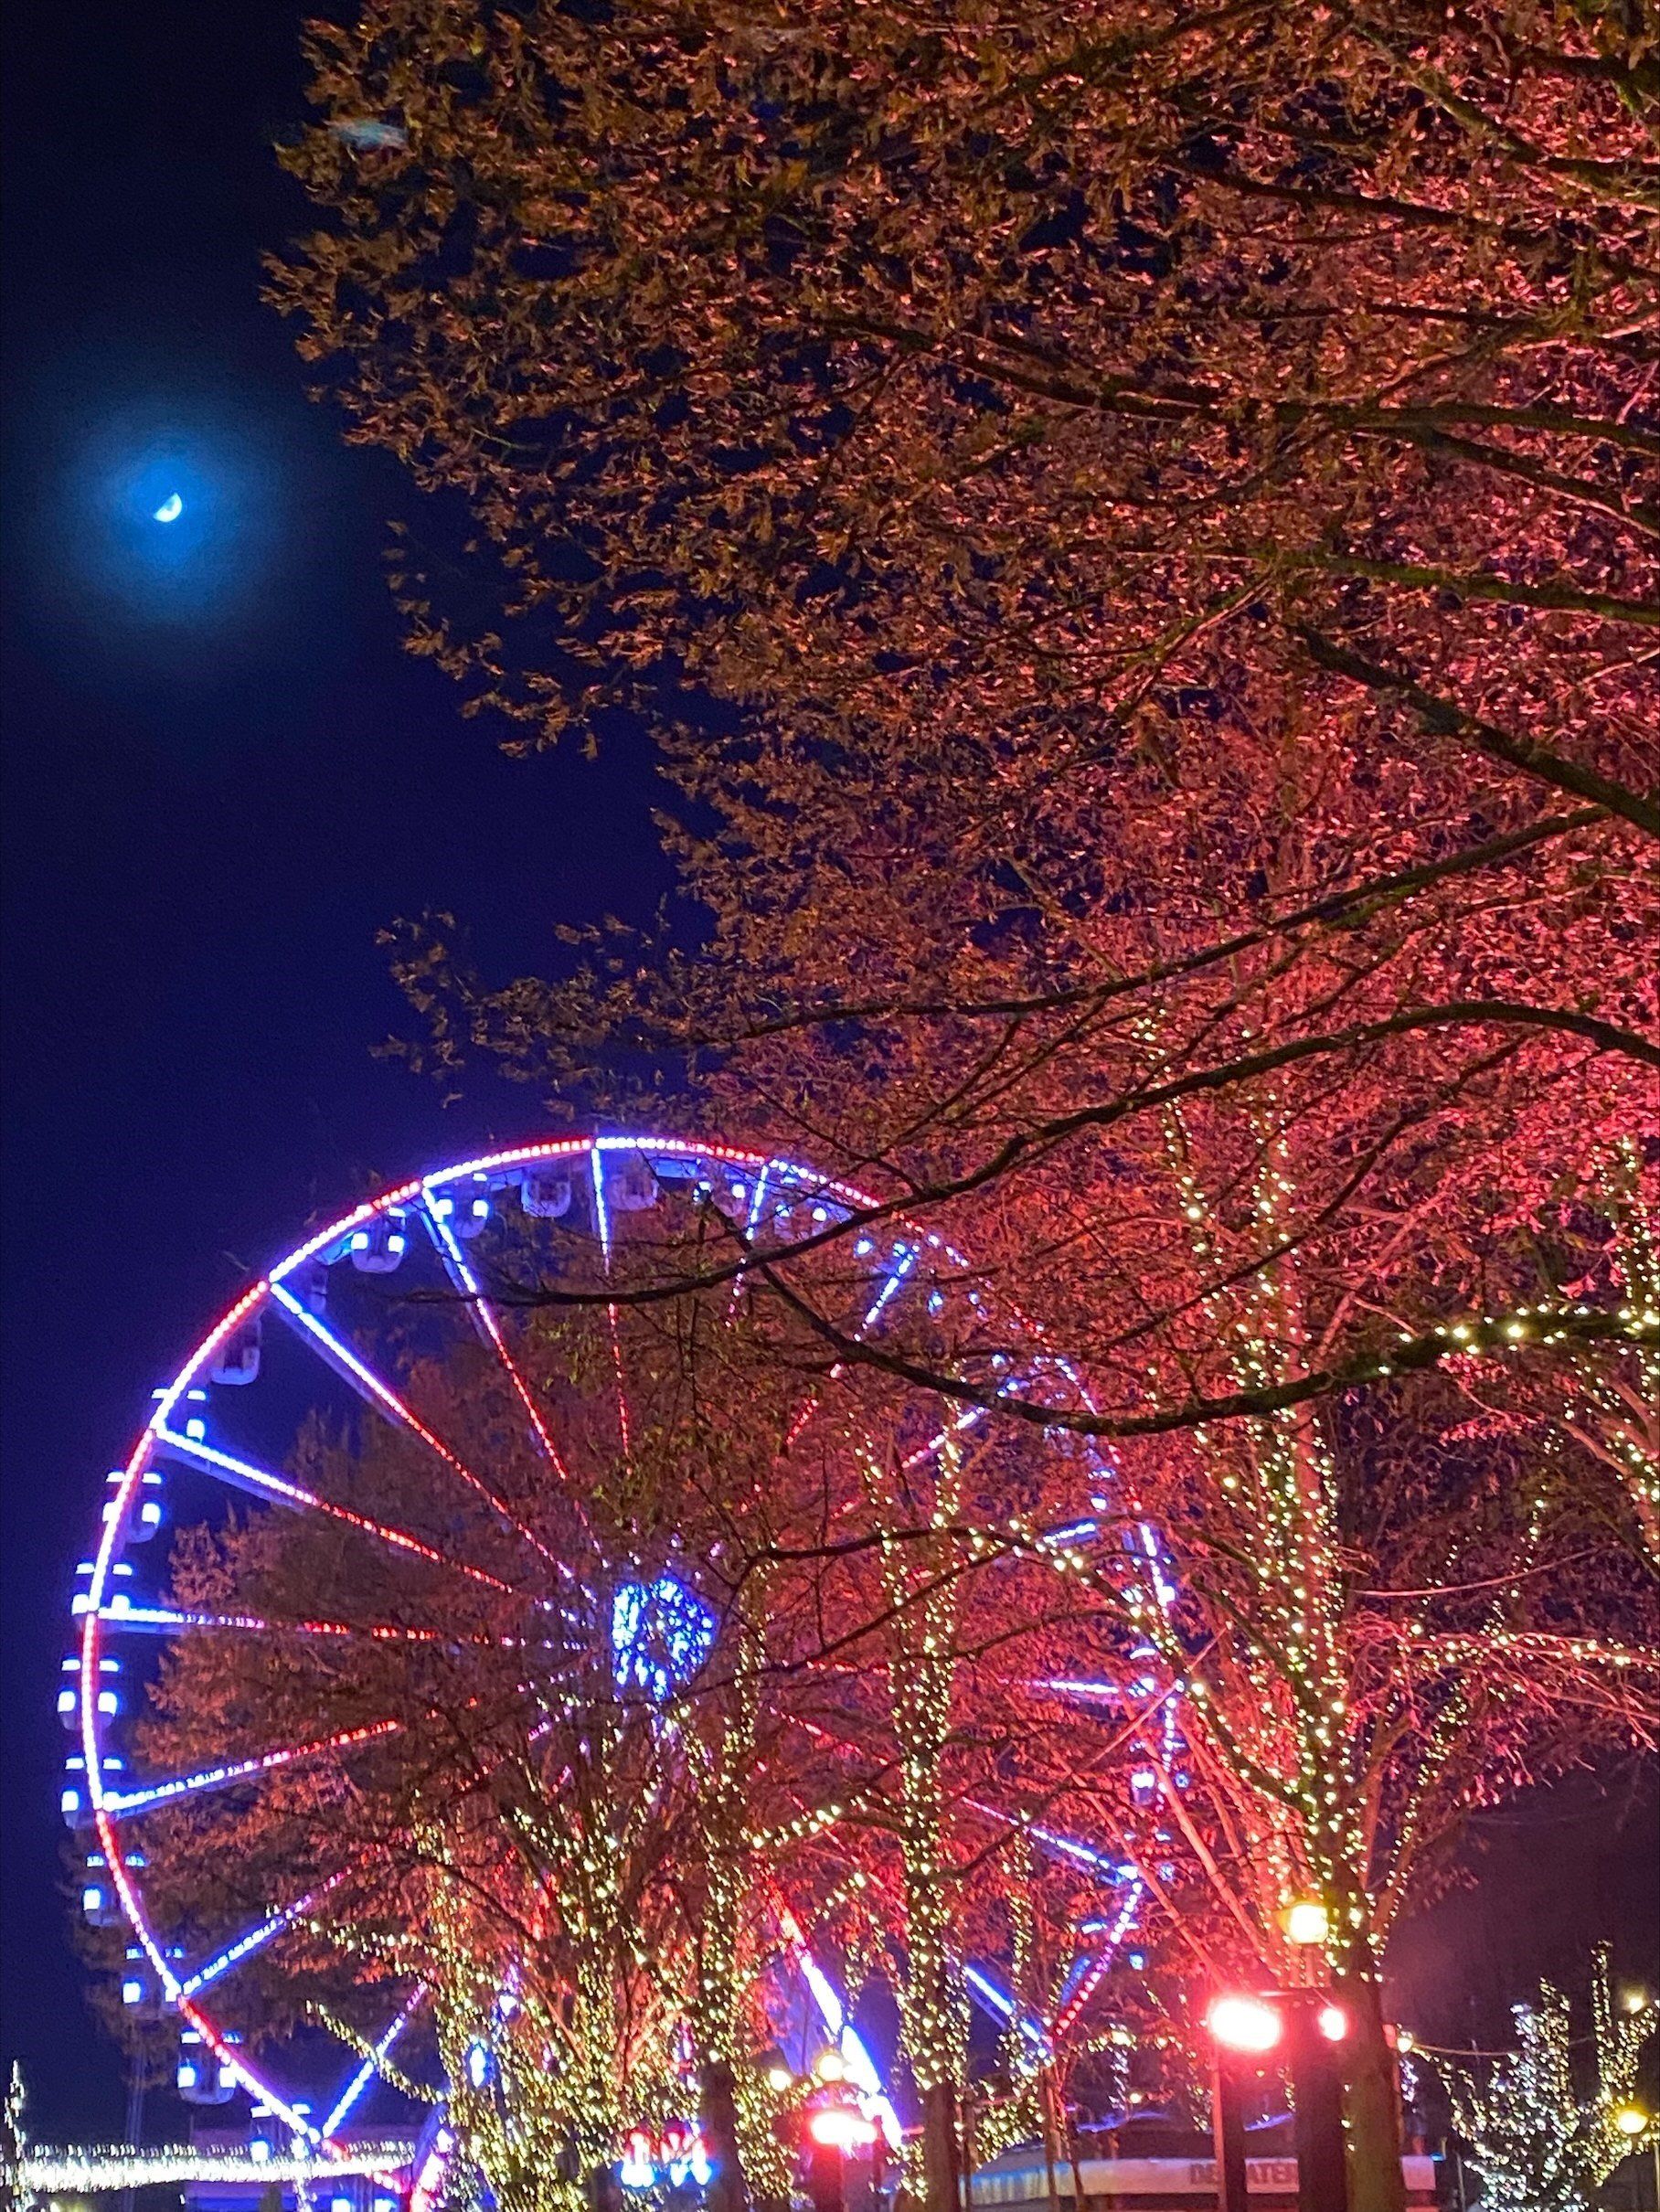 Het reuzenrad op het Steenplein bij nacht. Het reuzenrad zelf is verlicht met rode en blauwe lichtje